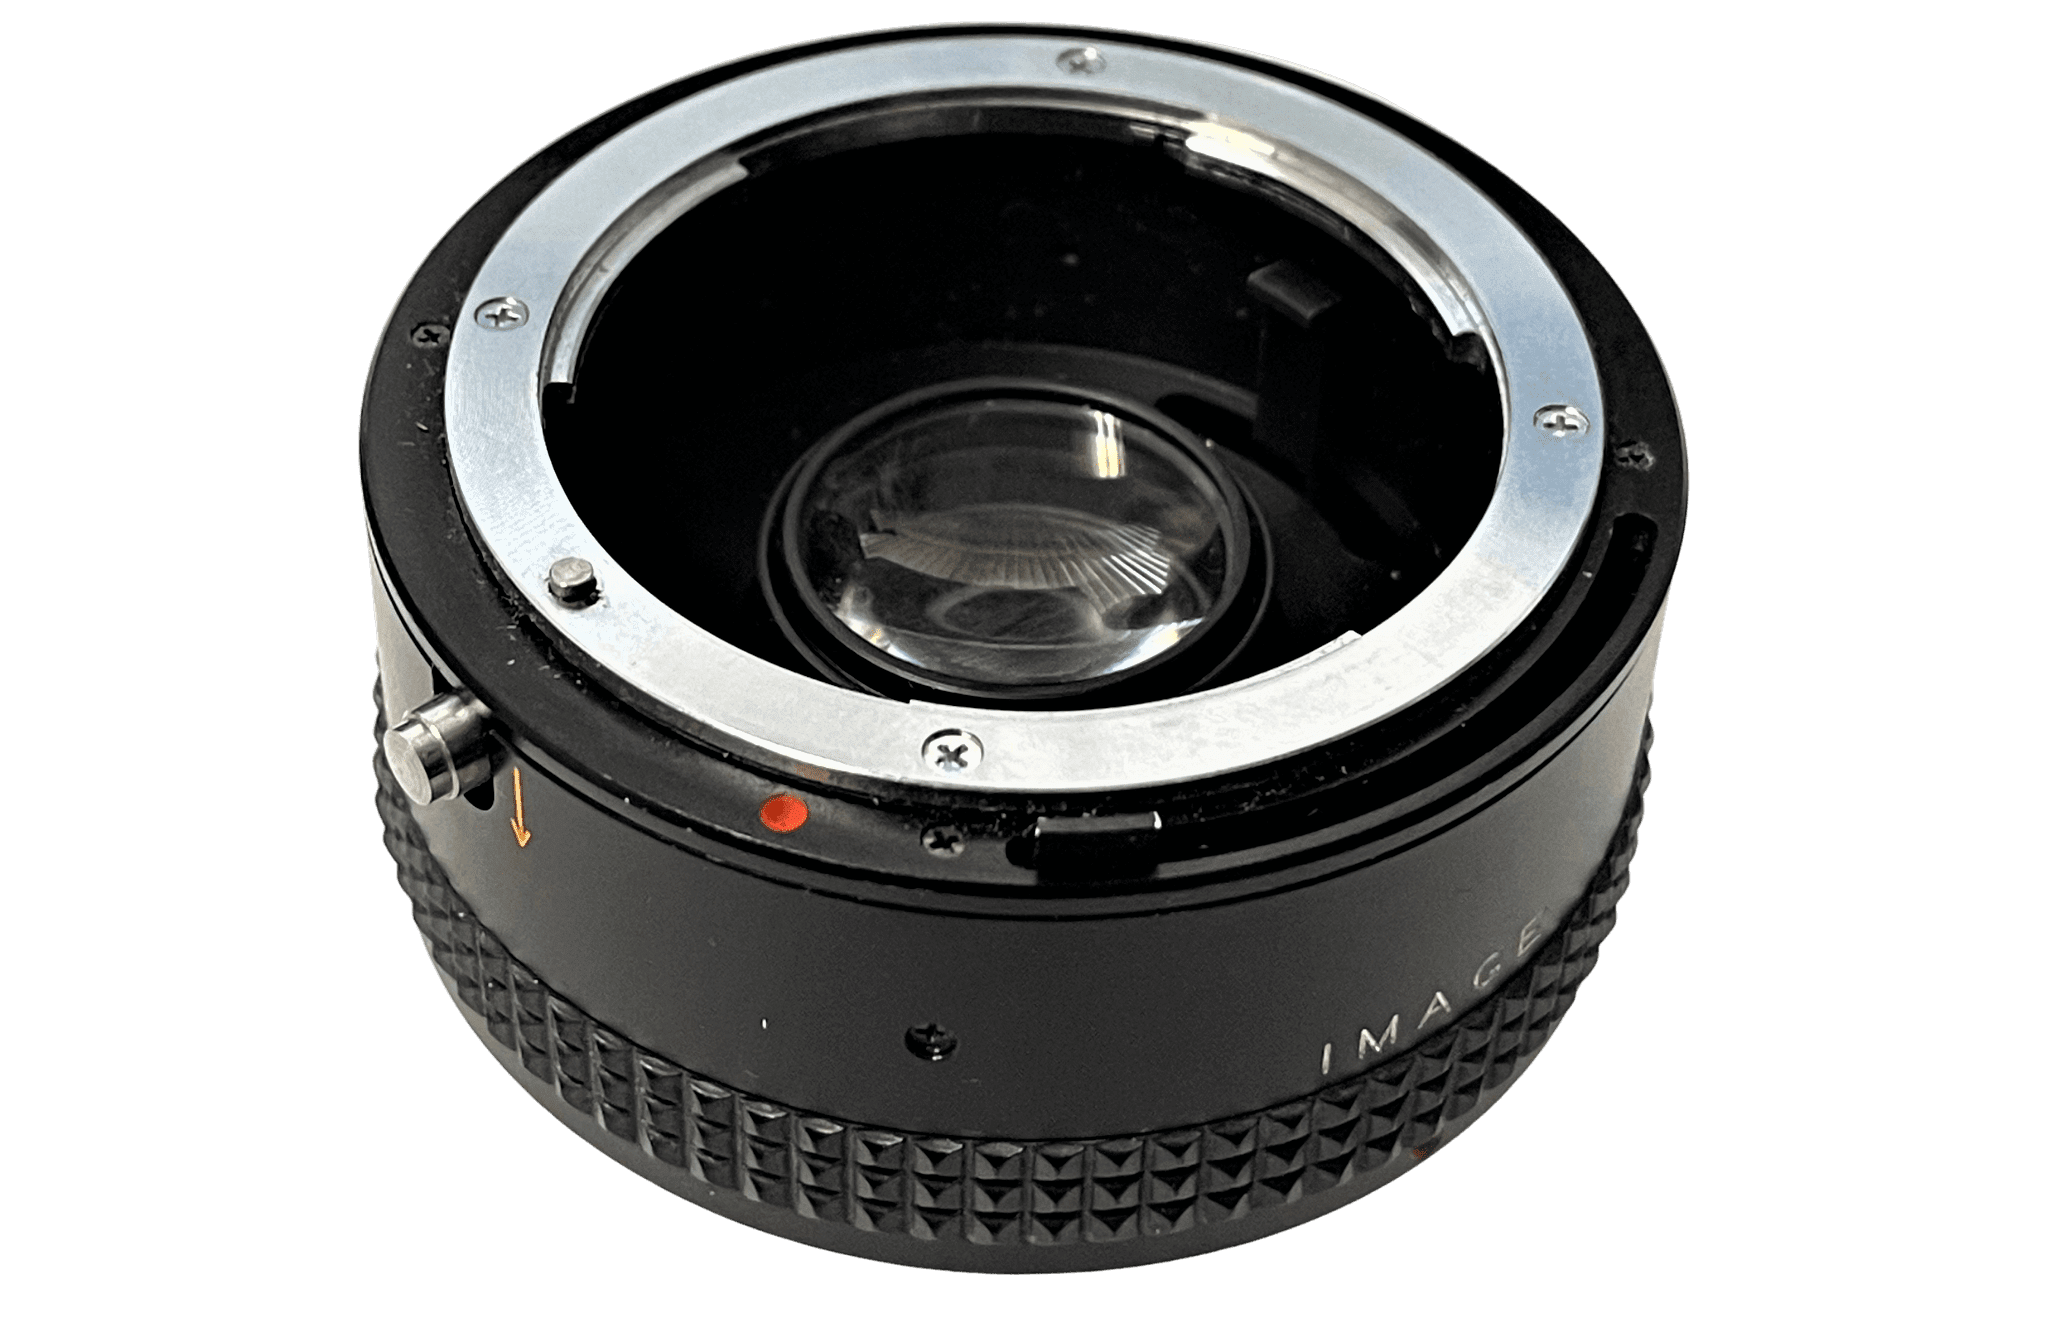 2x Image Teleconverter Lens